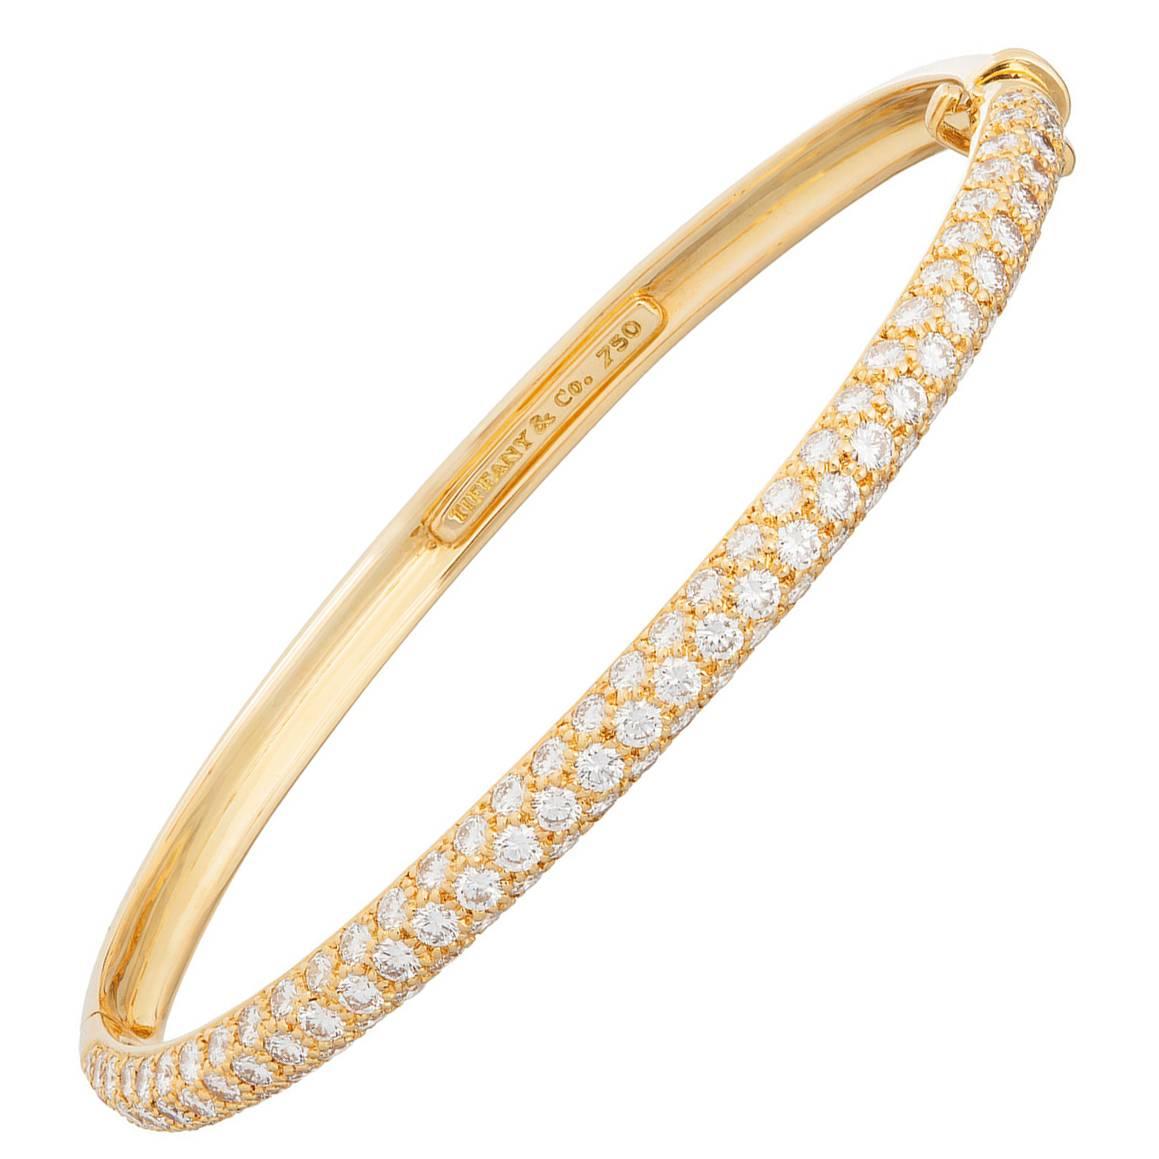 Tiffany & Co. Pave Diamond Gold Bangle Bracelet